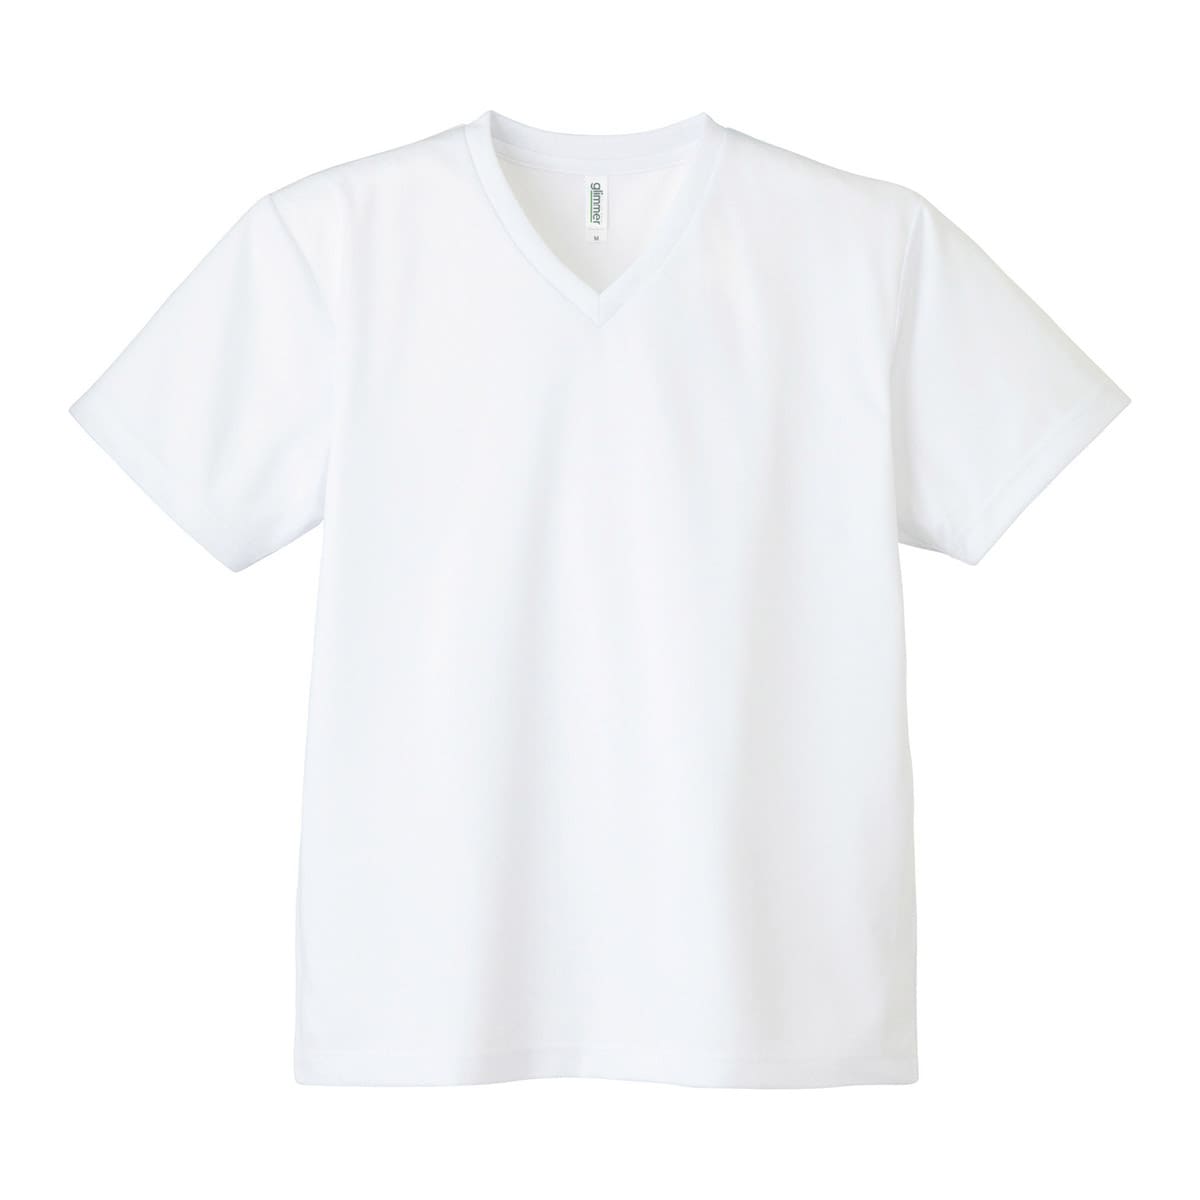 速乾 tシャツ glimmer グリマー 4.4オンス ドライ Vネック Tシャツ 00337-AV...